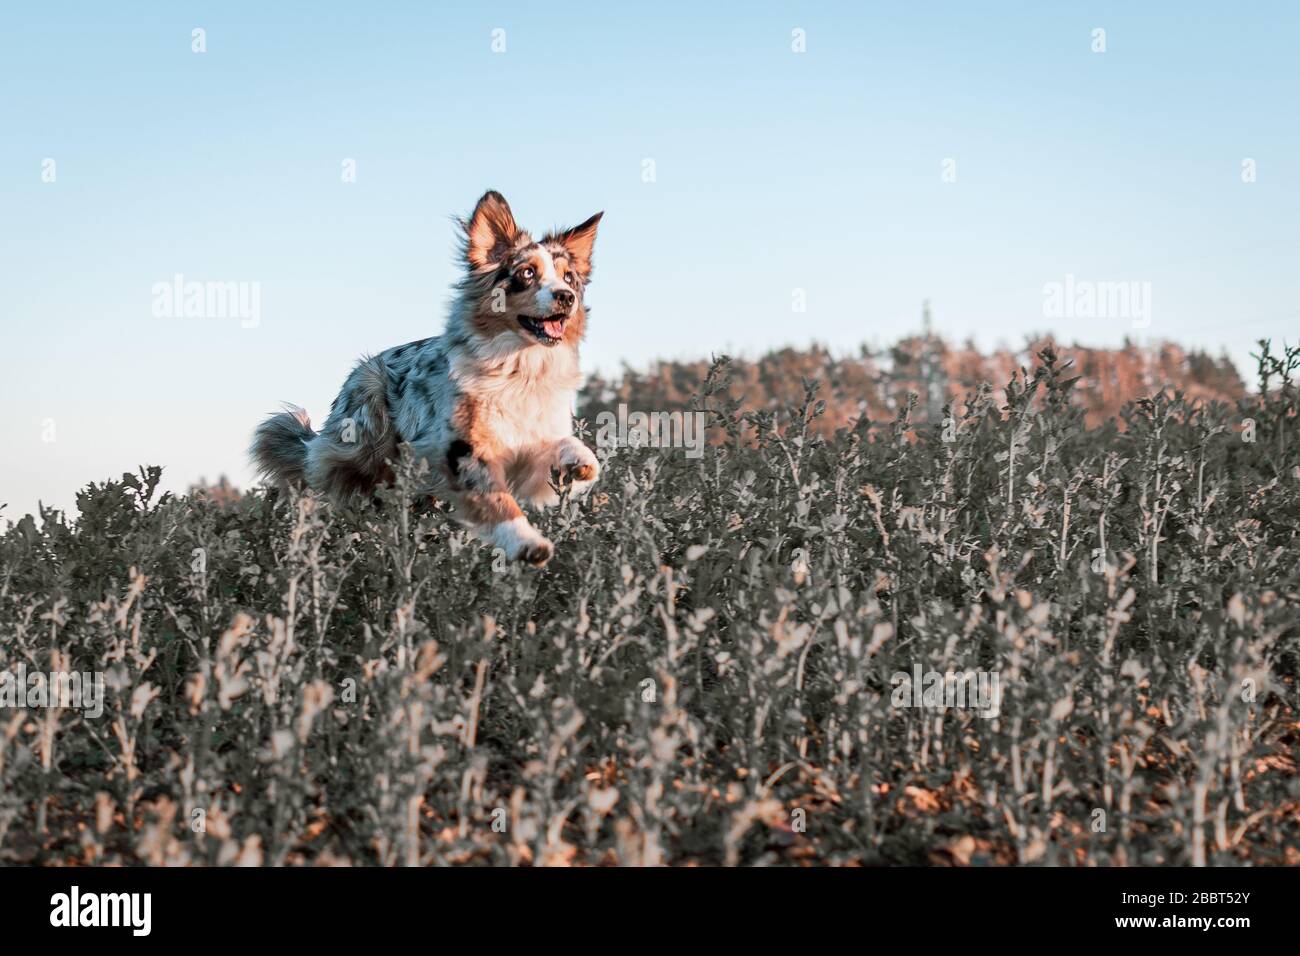 Dog australian shepherd blue merle jumping in field Stock Photo